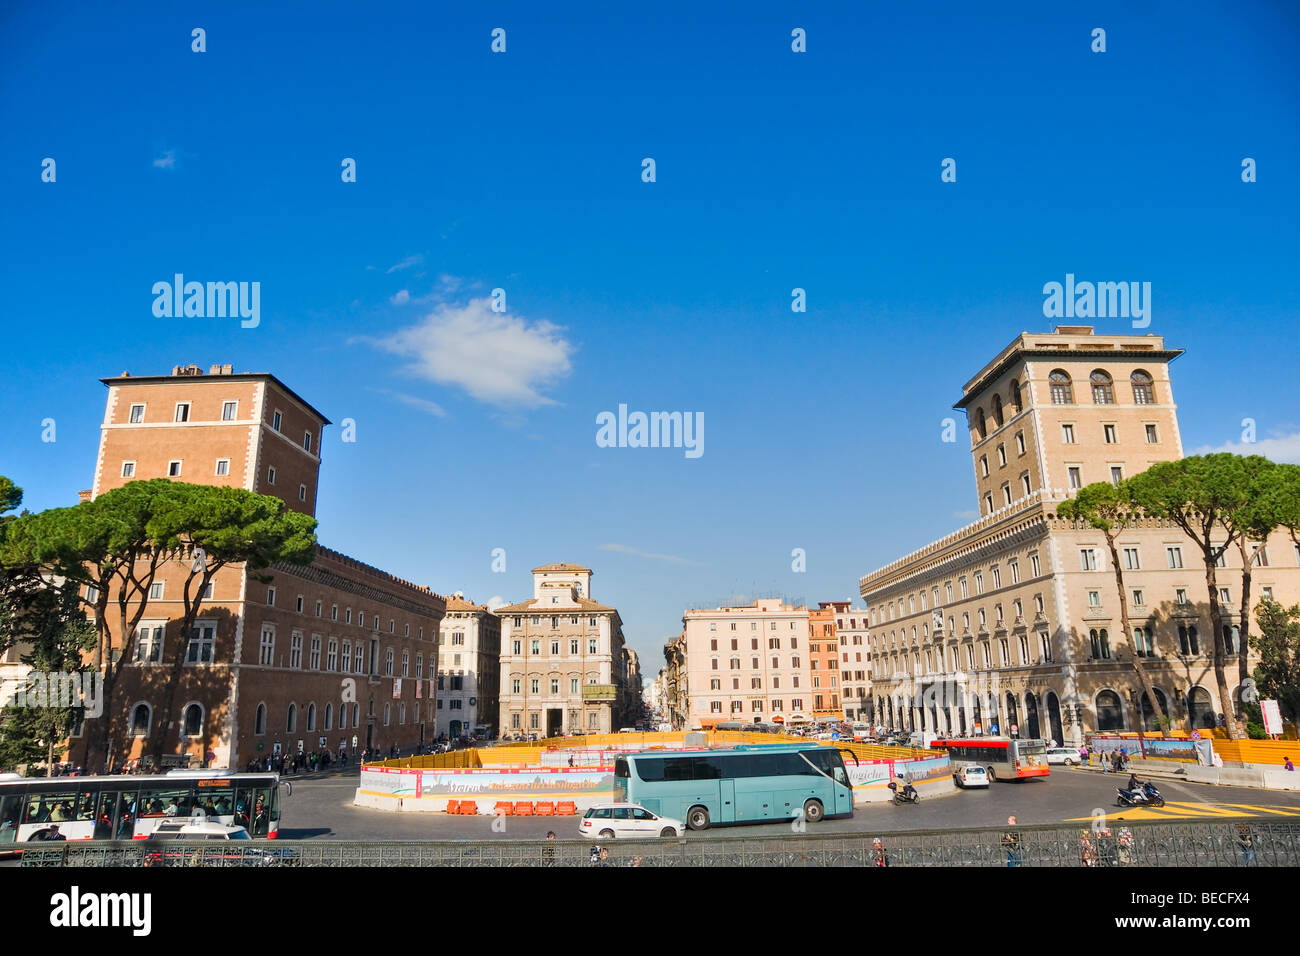 Vue panoramique sur la Piazza Venezia, Rome, Italie. Banque D'Images